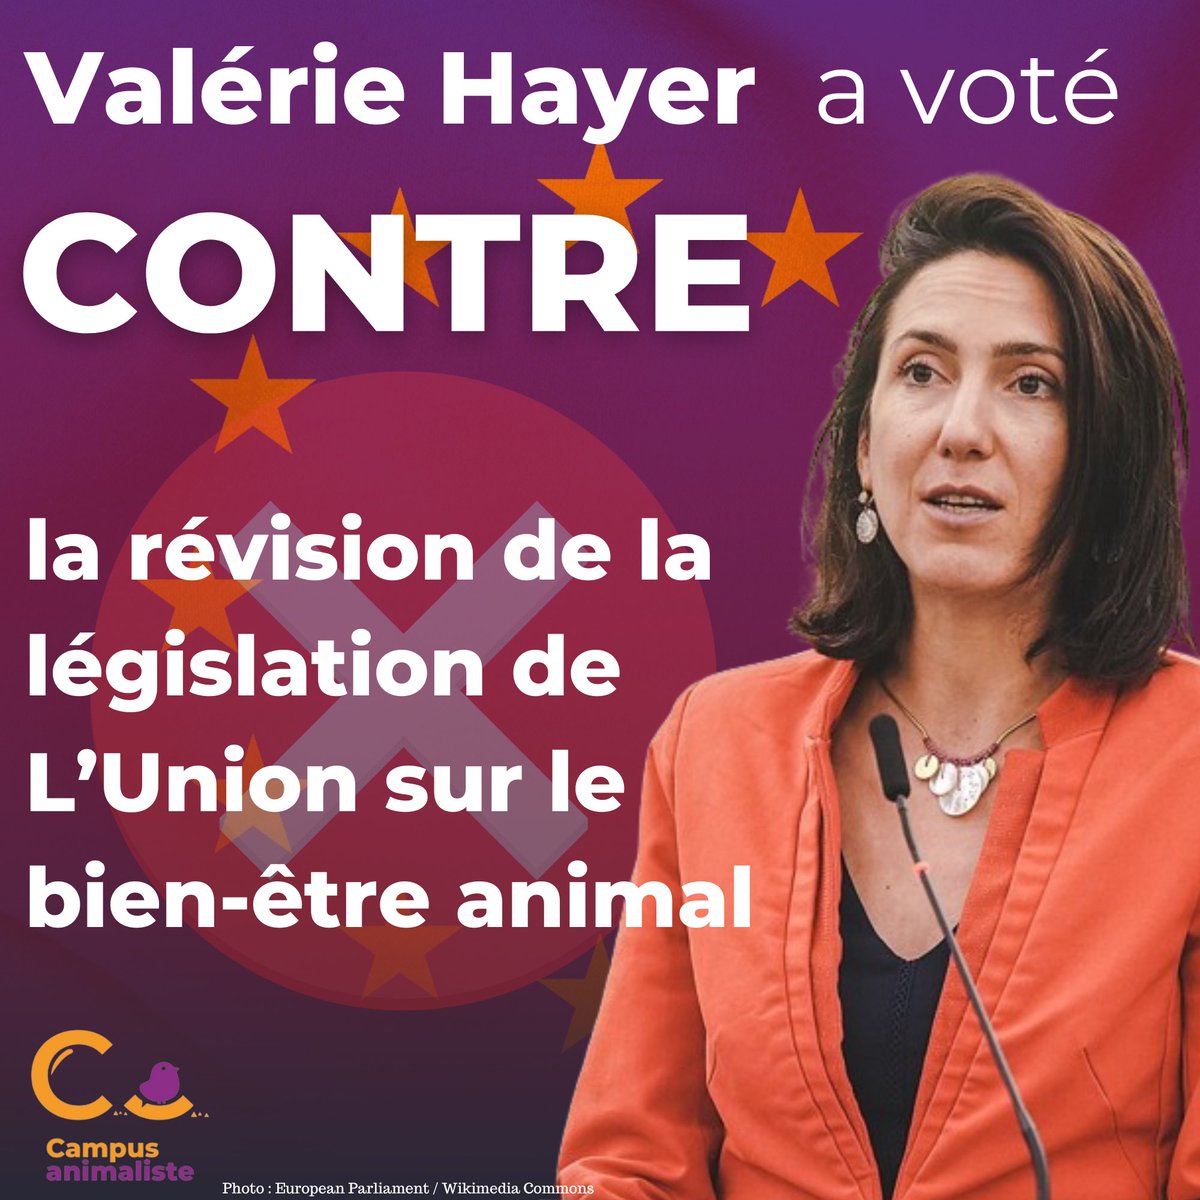 La candidate macroniste @ValerieHayer a voté contre la révision de la législation de l’Union sur le bien-être animal. 

Pour les animaux, pour l’environnement et pour nous-même, le vote utile, c’est le vote pour le @PartiAnimaliste.
#Européennes2024